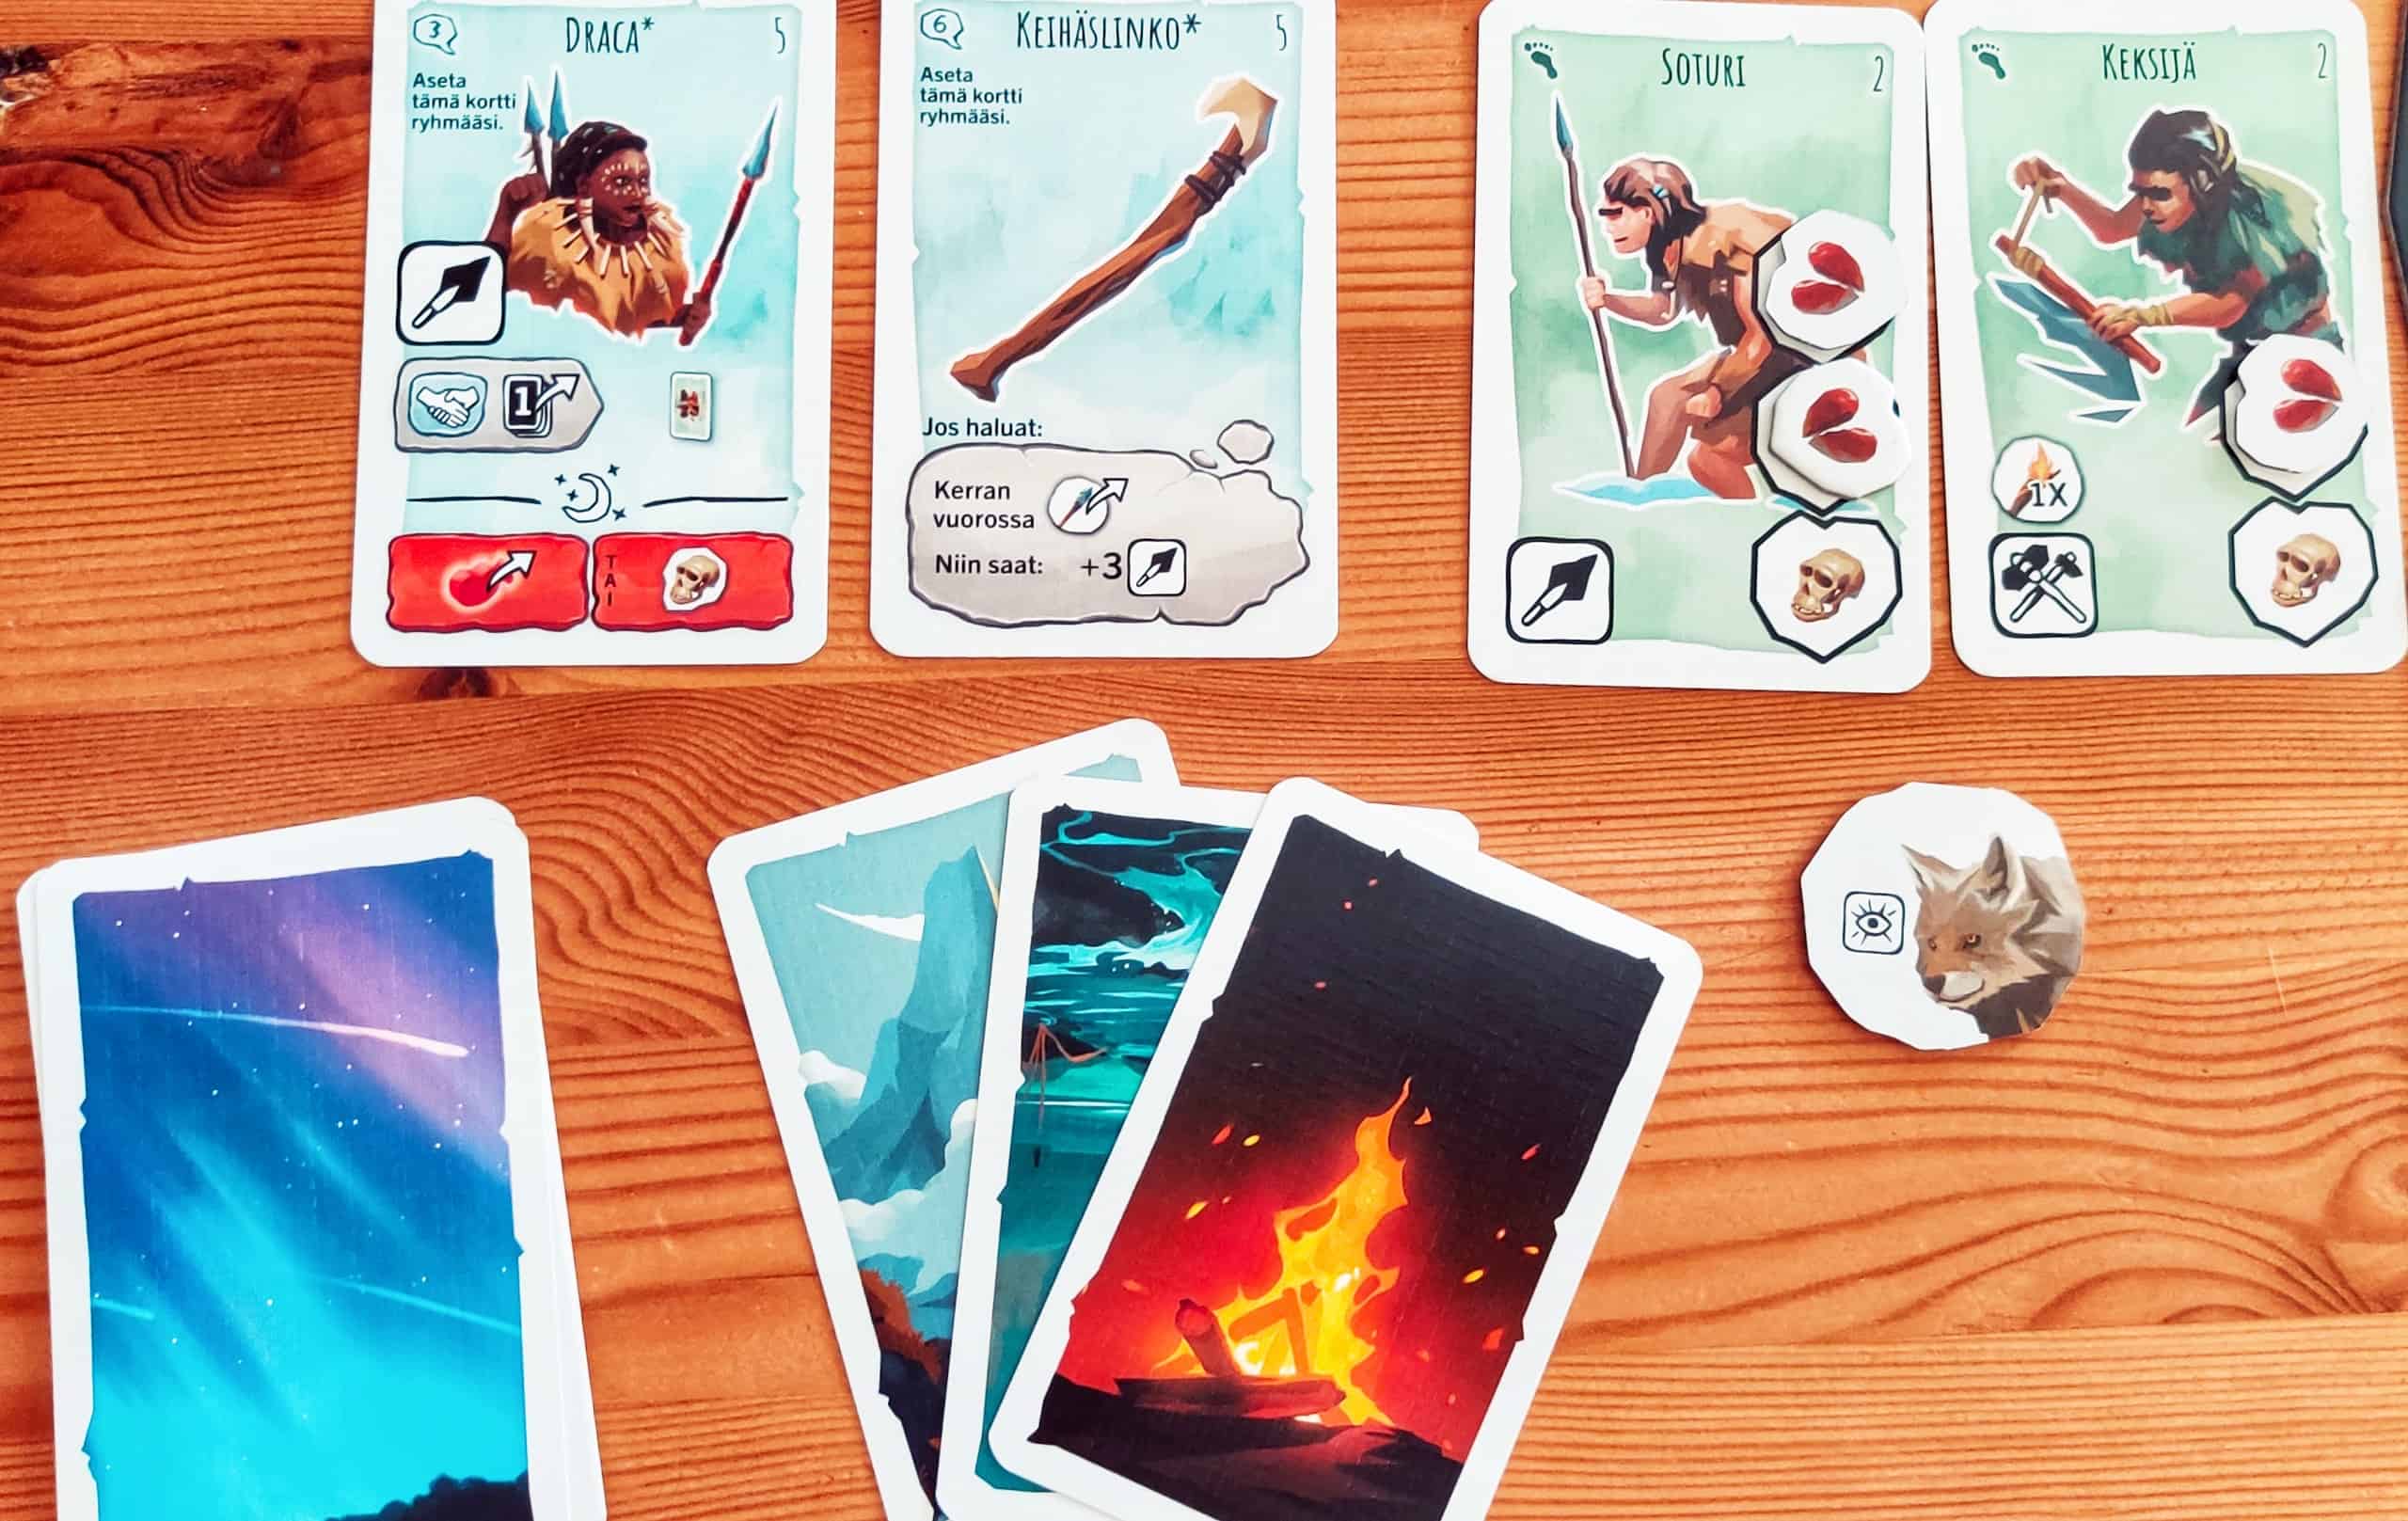 Pelaajan heimo: kaksi heimolaiskorttia, yksi erikoisjäsen, yksi ase ja susimerkki.